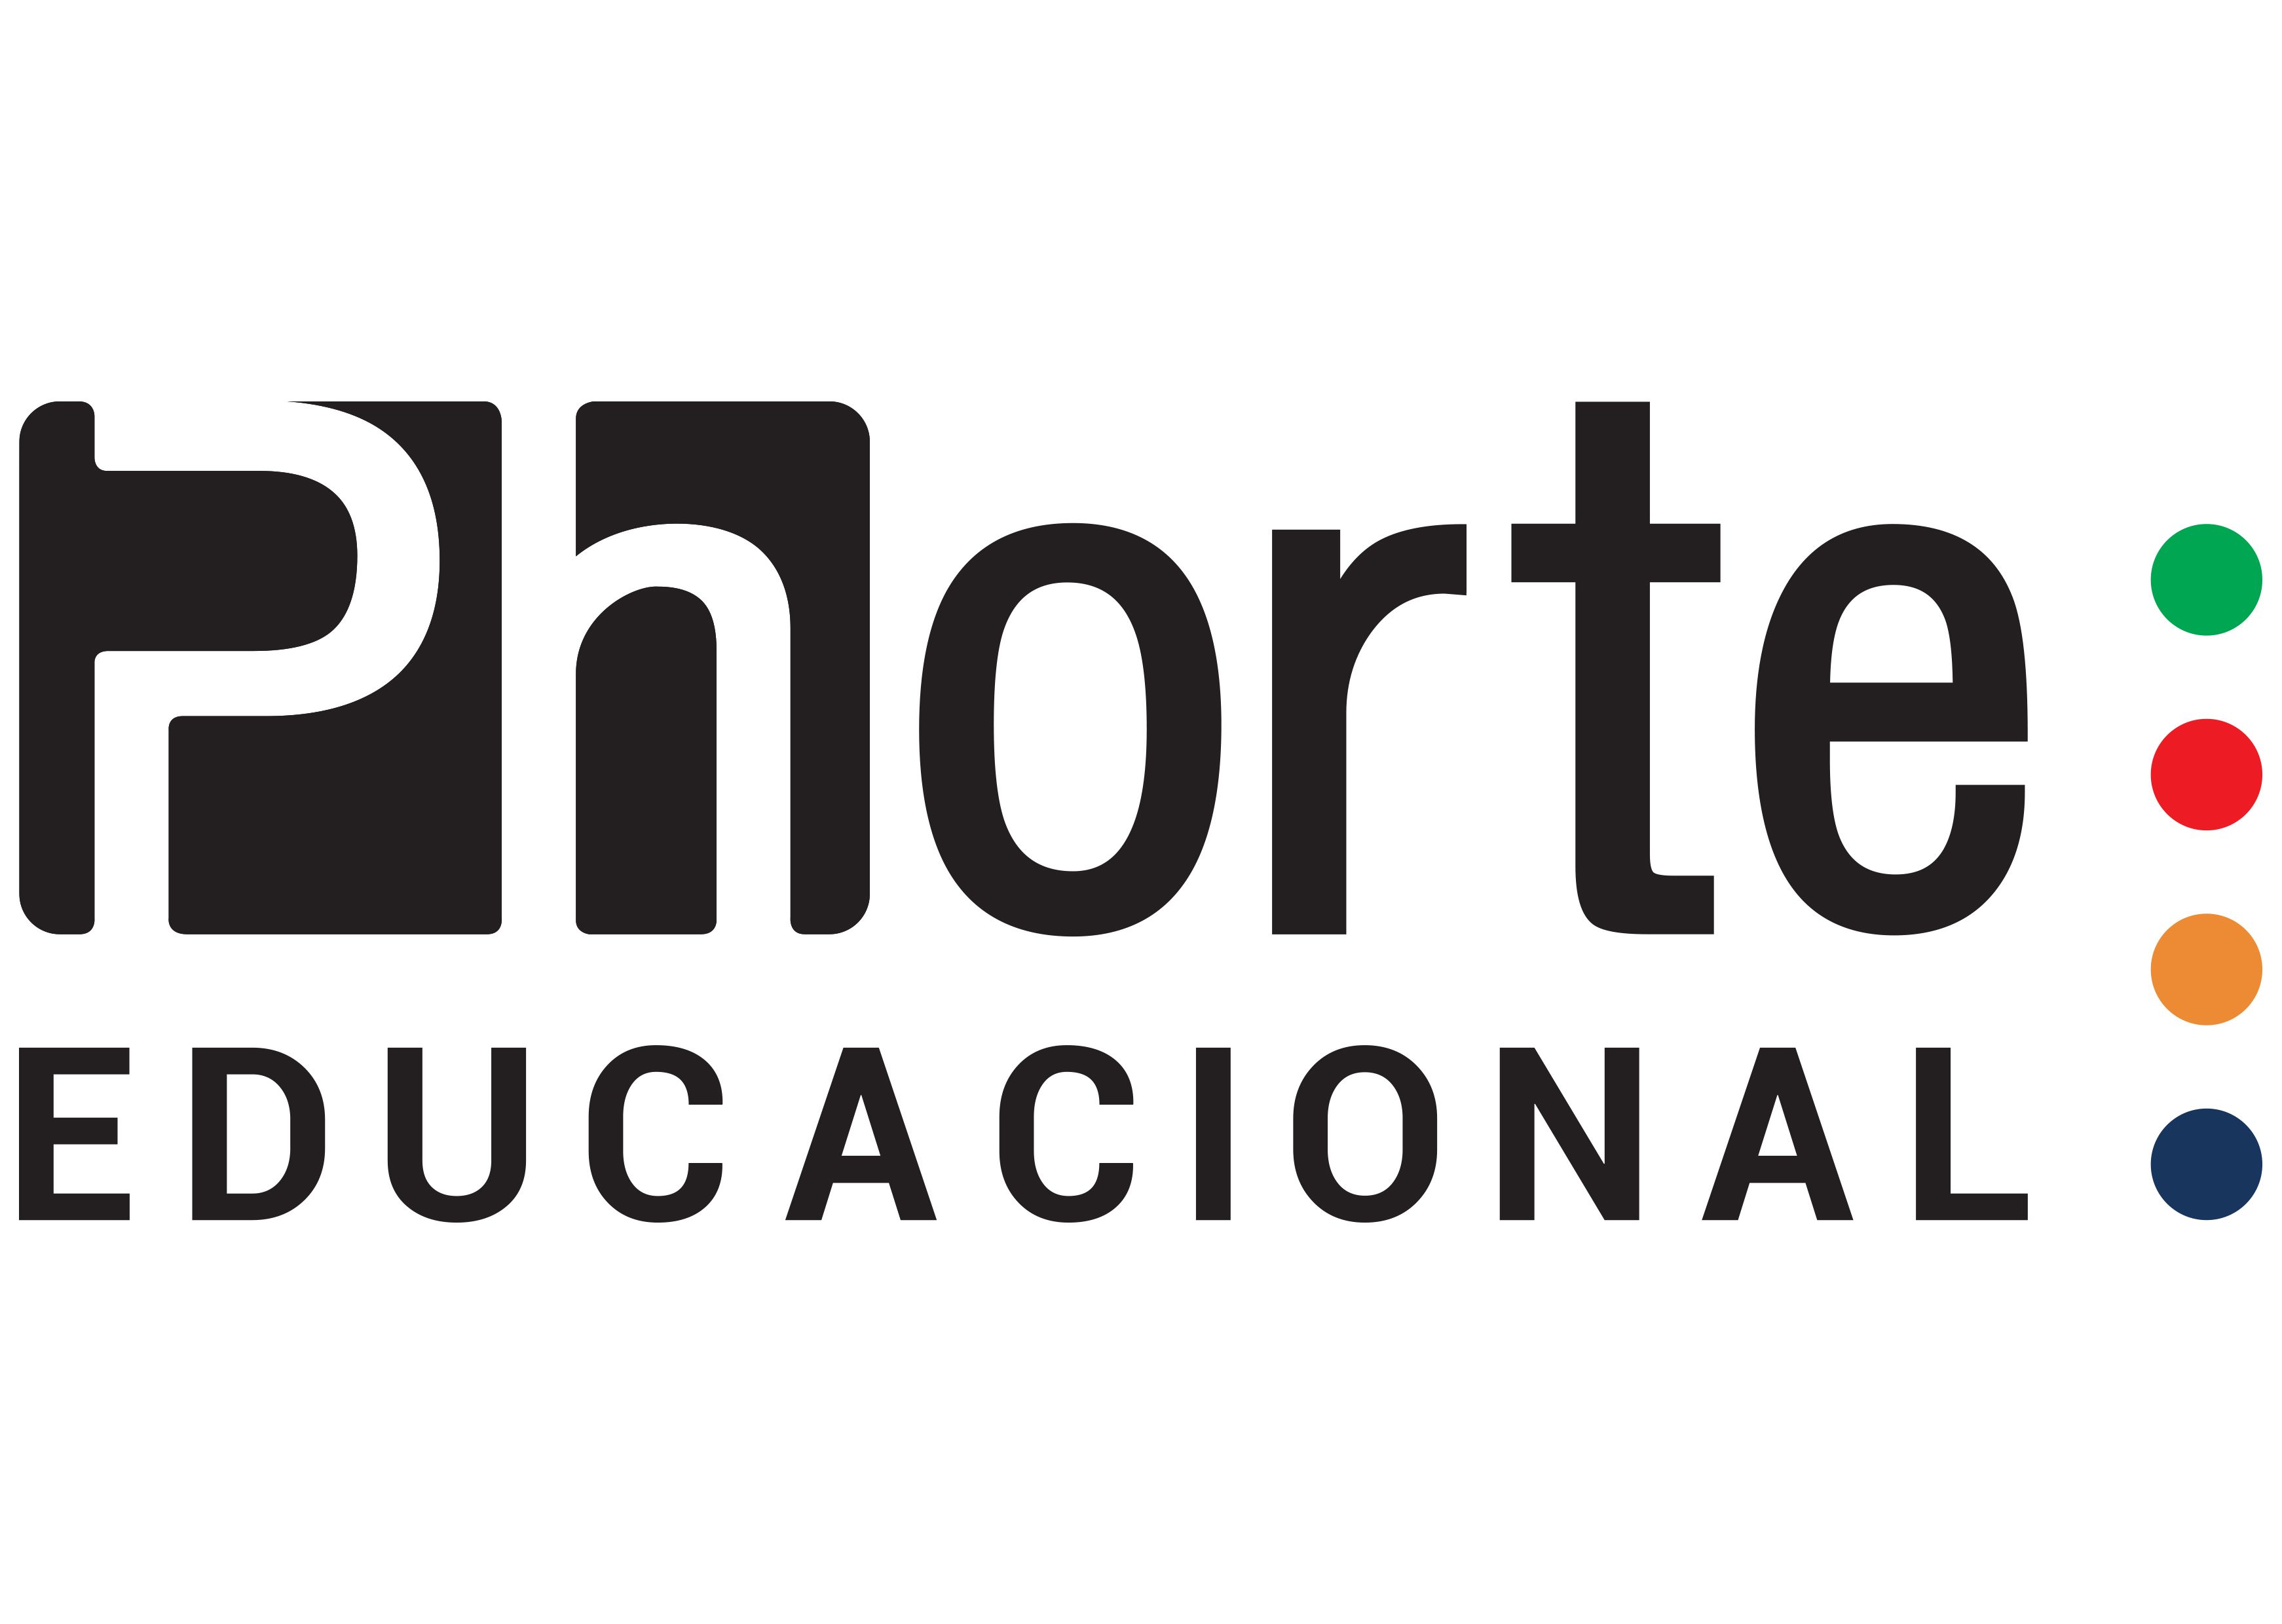 Instituto Phorte